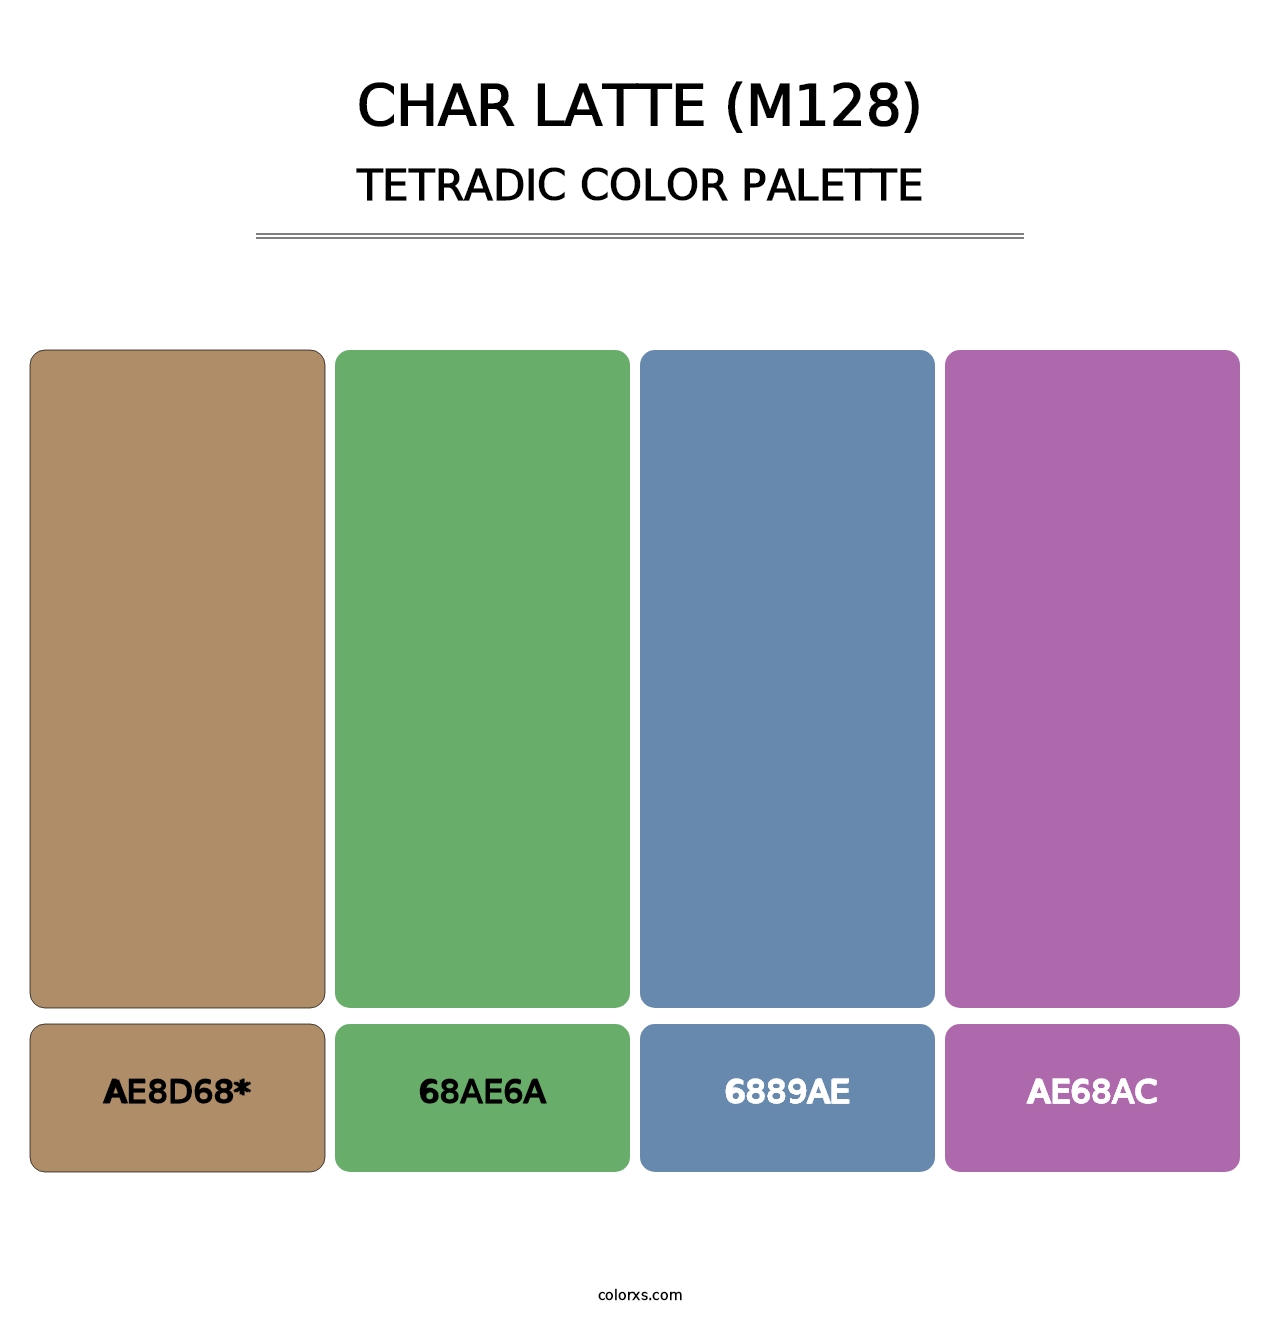 Char Latte (M128) - Tetradic Color Palette